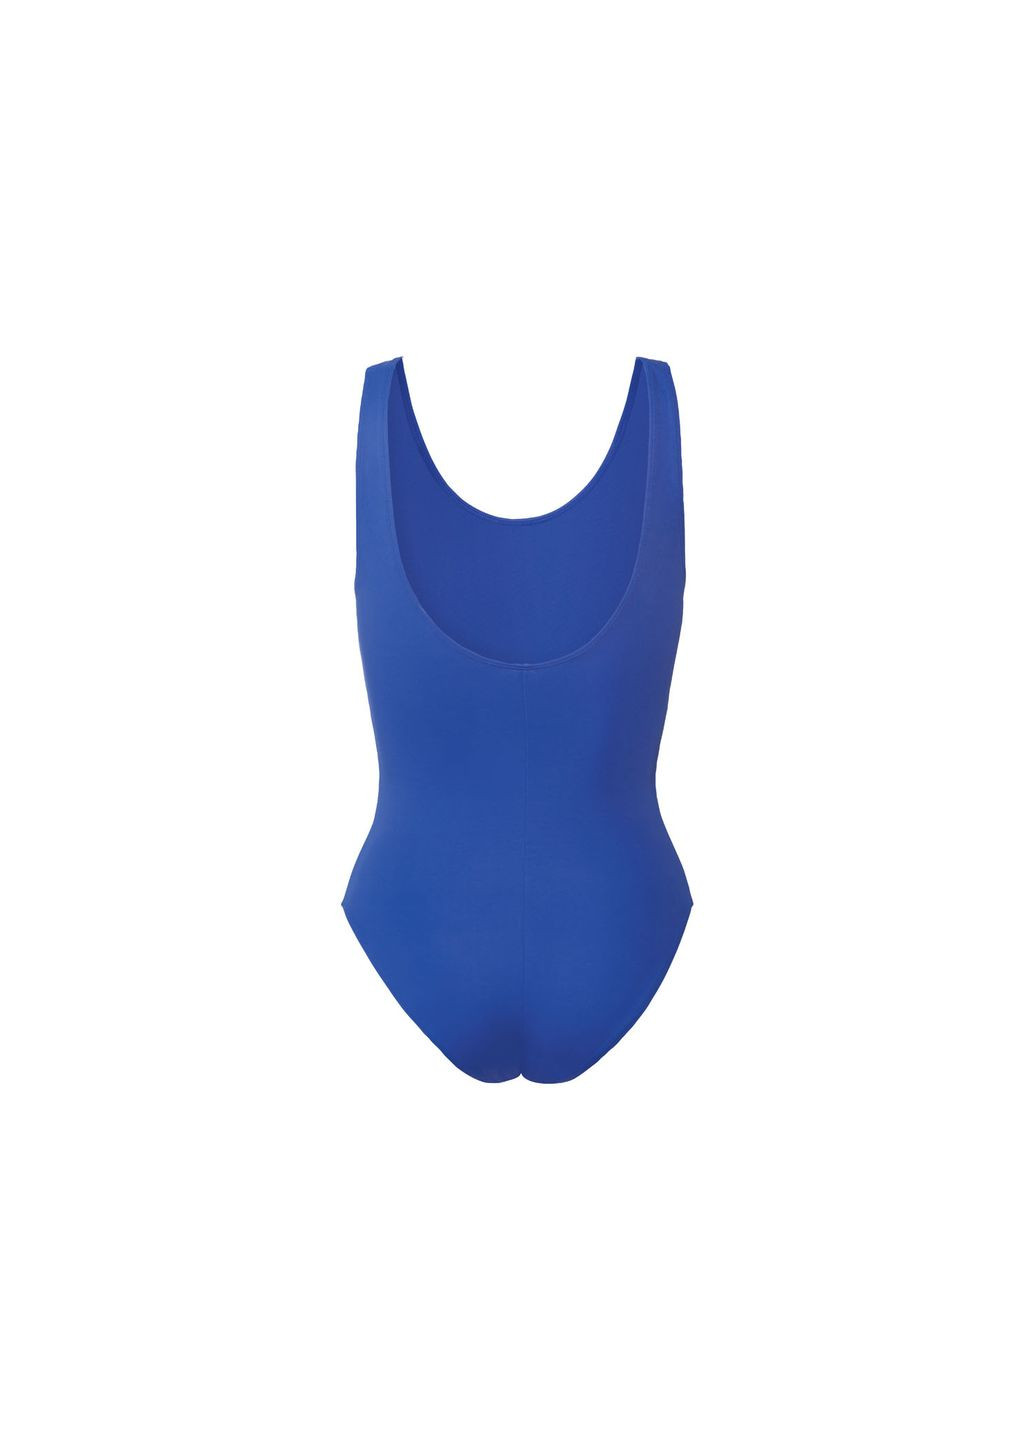 Синий купальник слитный на подкладке для женщины creora® 371866 38(s) бикини Esmara